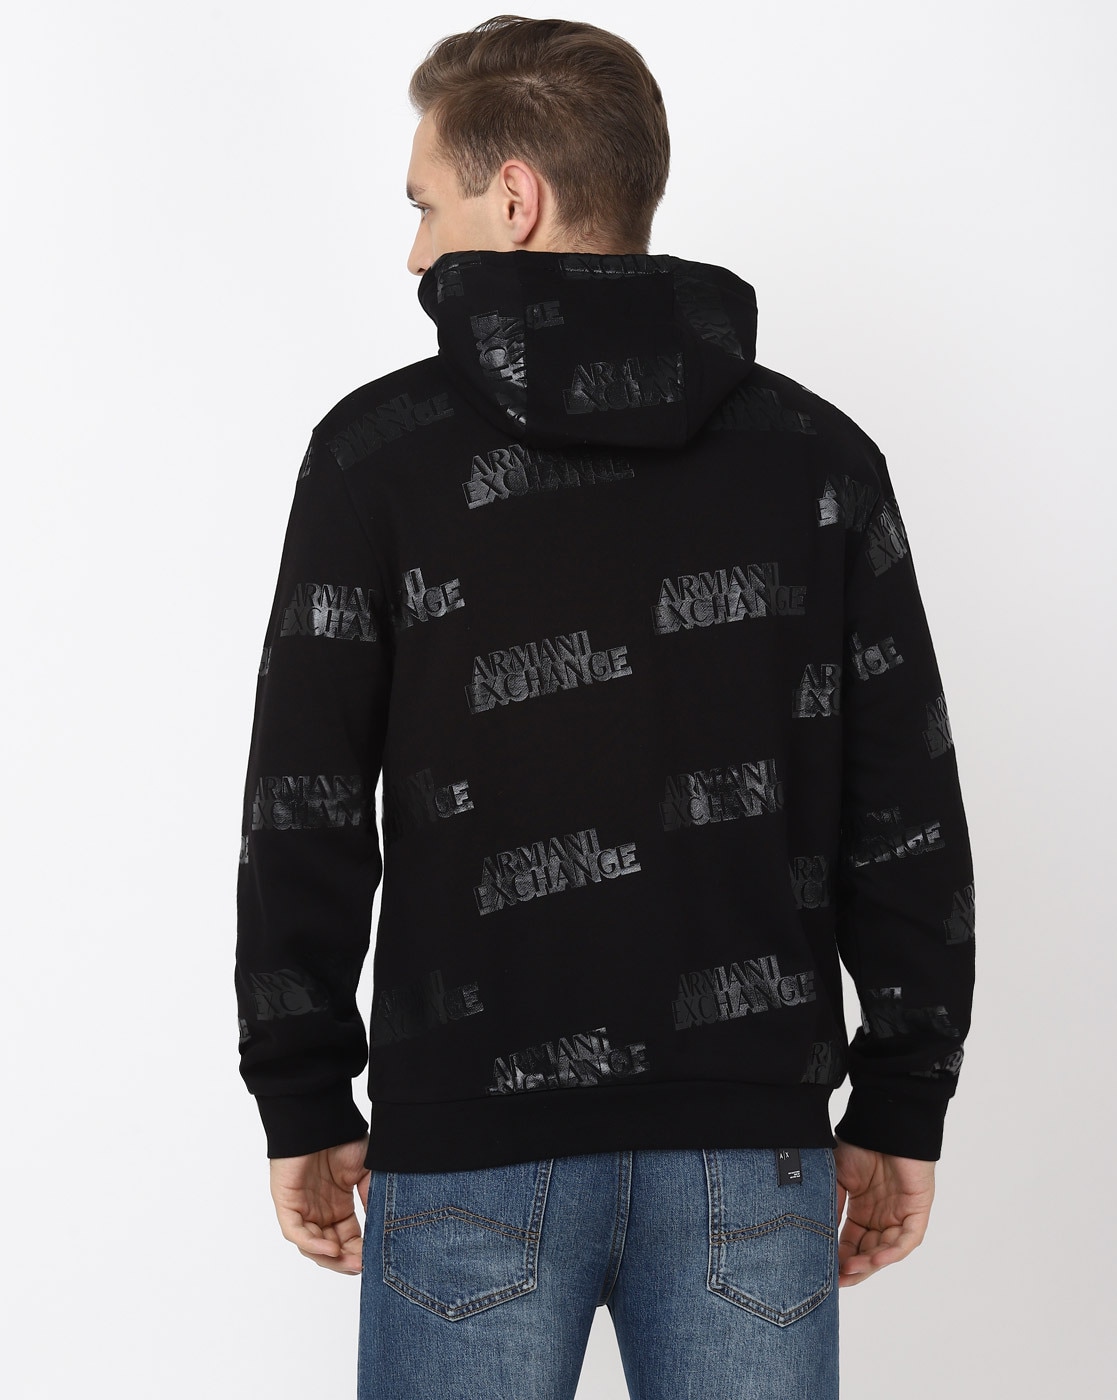 Buy Black Sweatshirt & Hoodies for Men by ARMANI EXCHANGE Online